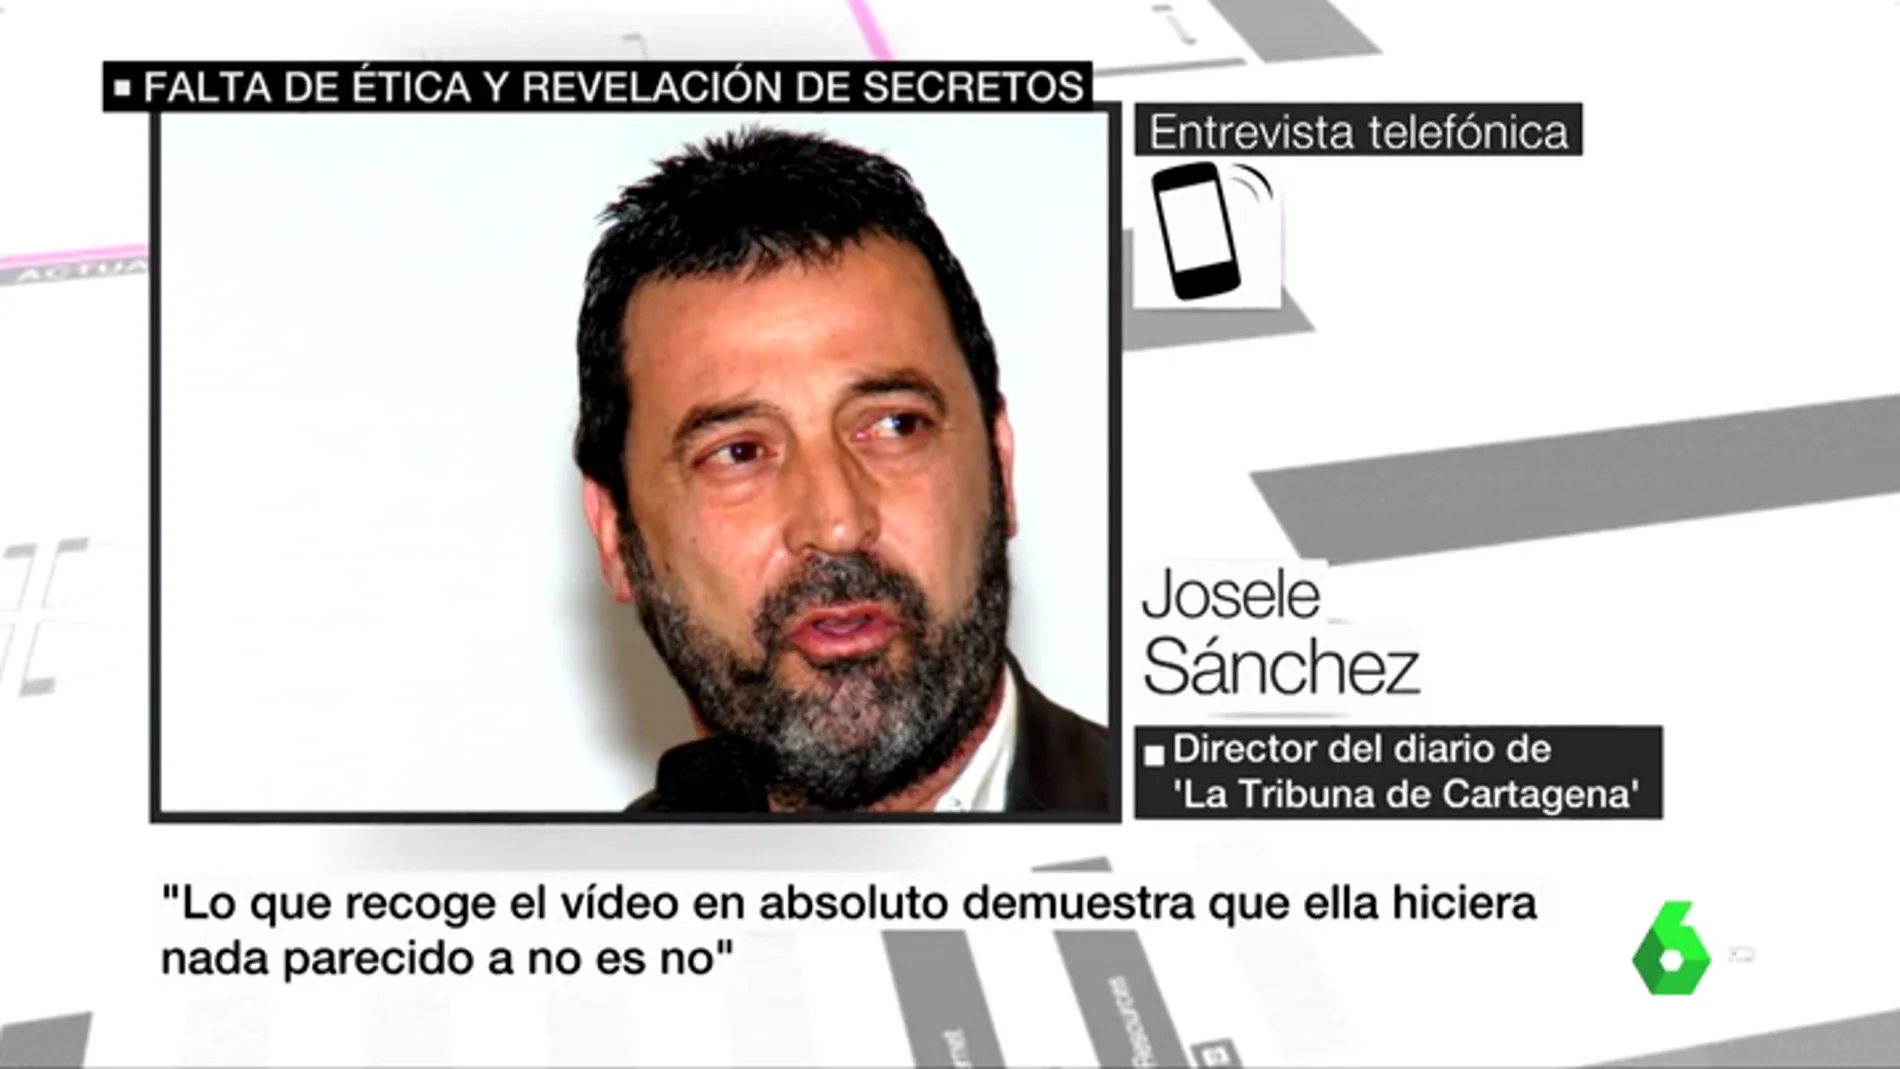  El director de 'La Tribuna de Cartagena' no descarta publicar el vídeo íntegro de 'La Manada' con la víctima de San Fermín